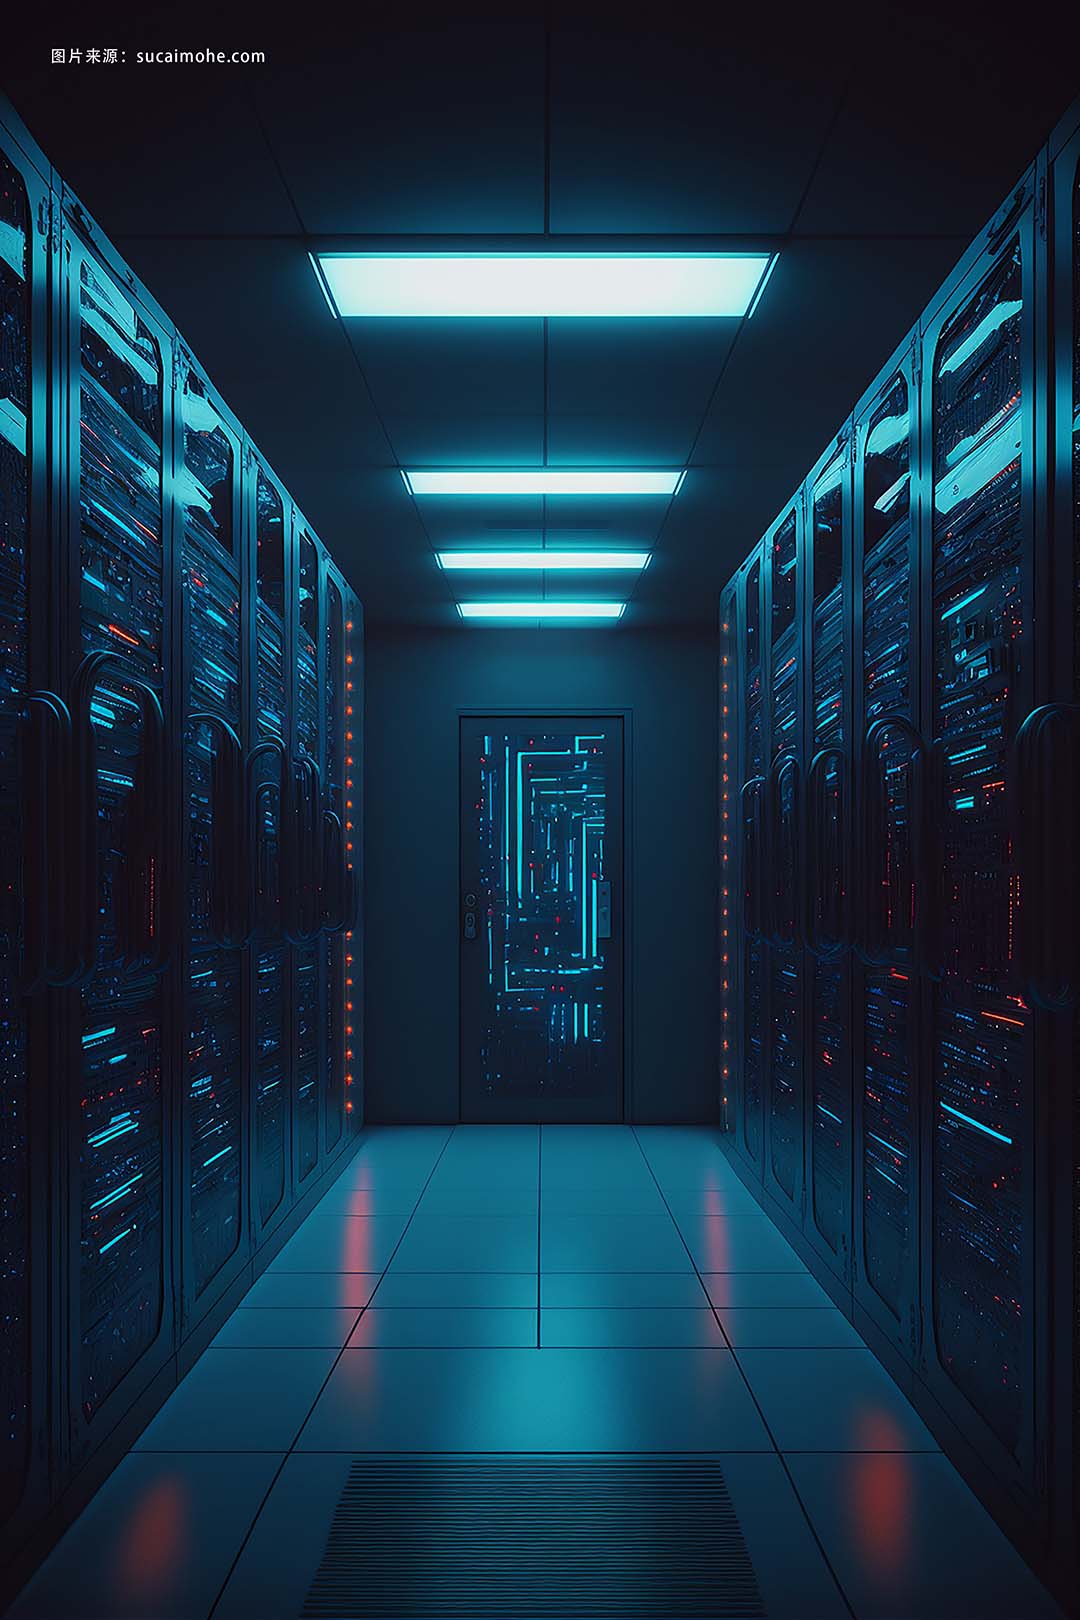   数据服务器机架中心室，带有大数据计算机中心蓝色内部托管存储硬件 